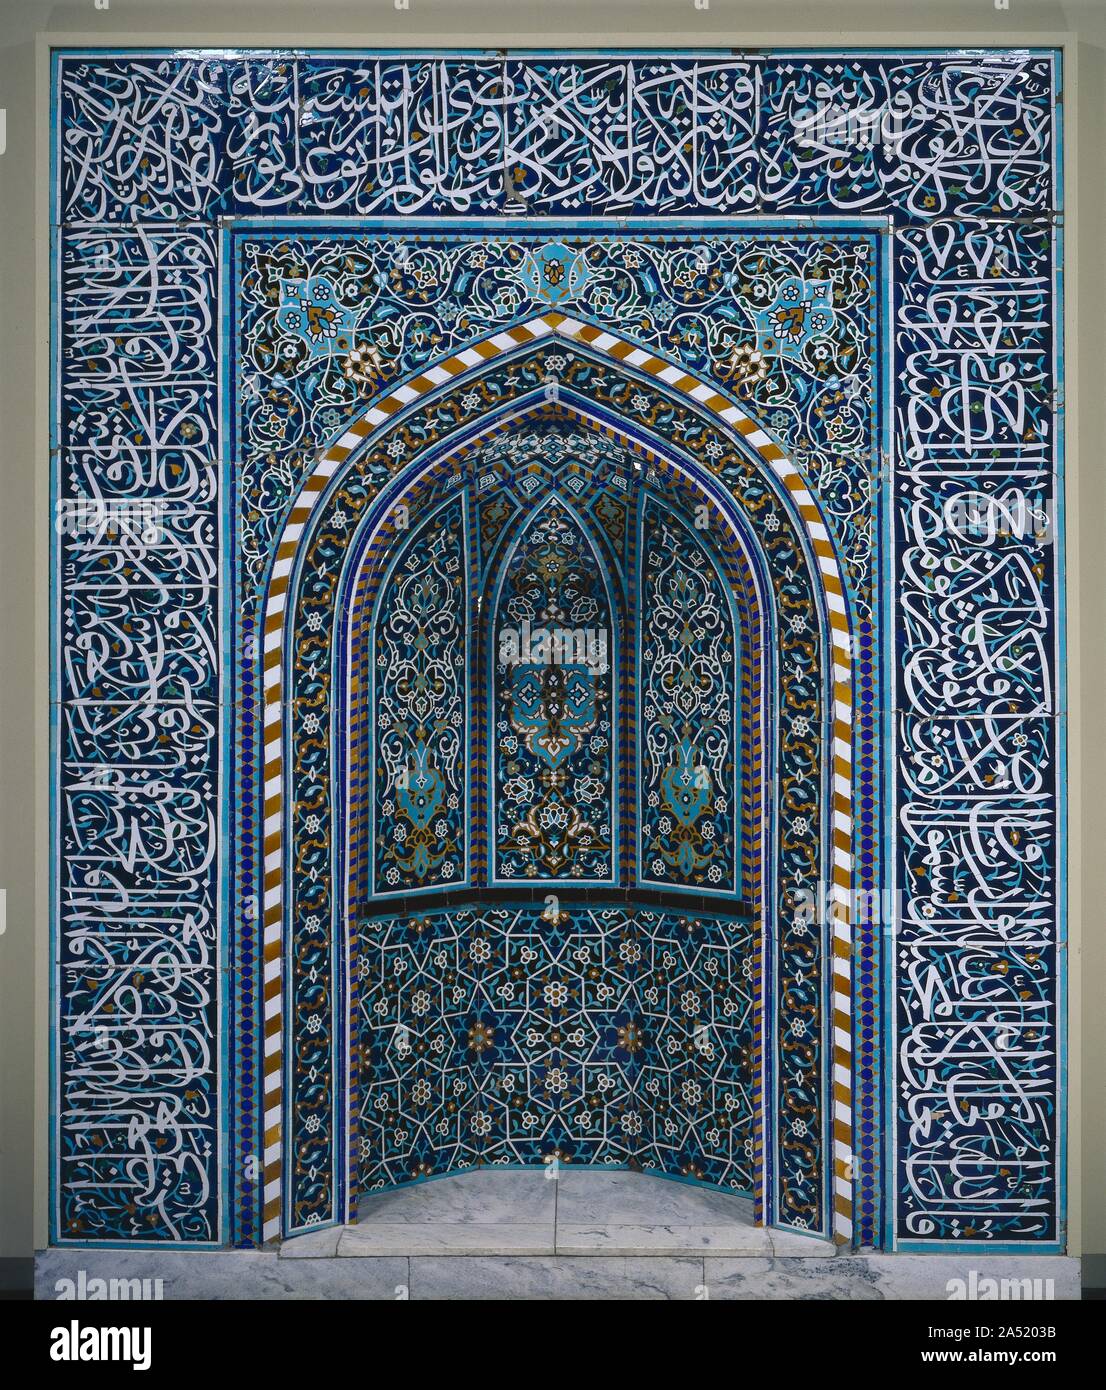 Preghiera nicchia (Mihrab), primi 1600s. La preghiera di nicchia mihrab (in arabo) è il punto focale all' interno di una moschea. Esso si trova nel qibla parete che è orientato verso la Mecca, la città santa dell'Islam. I musulmani faccia la qibla parete durante la preghiera. Questo mihrab è un eccellente esempio di diversi elementi di design-calligraphy, piante e geometria-integrato in uno splendido insieme armonioso. Laureato colori e dimensioni a contribuire al suo successo. La posizione dominante di smalto bianco presenta i più importanti i versetti del Qur&#x2019;un scritto in elegante script thuluth che incornicia la nicchia. White gl Foto Stock